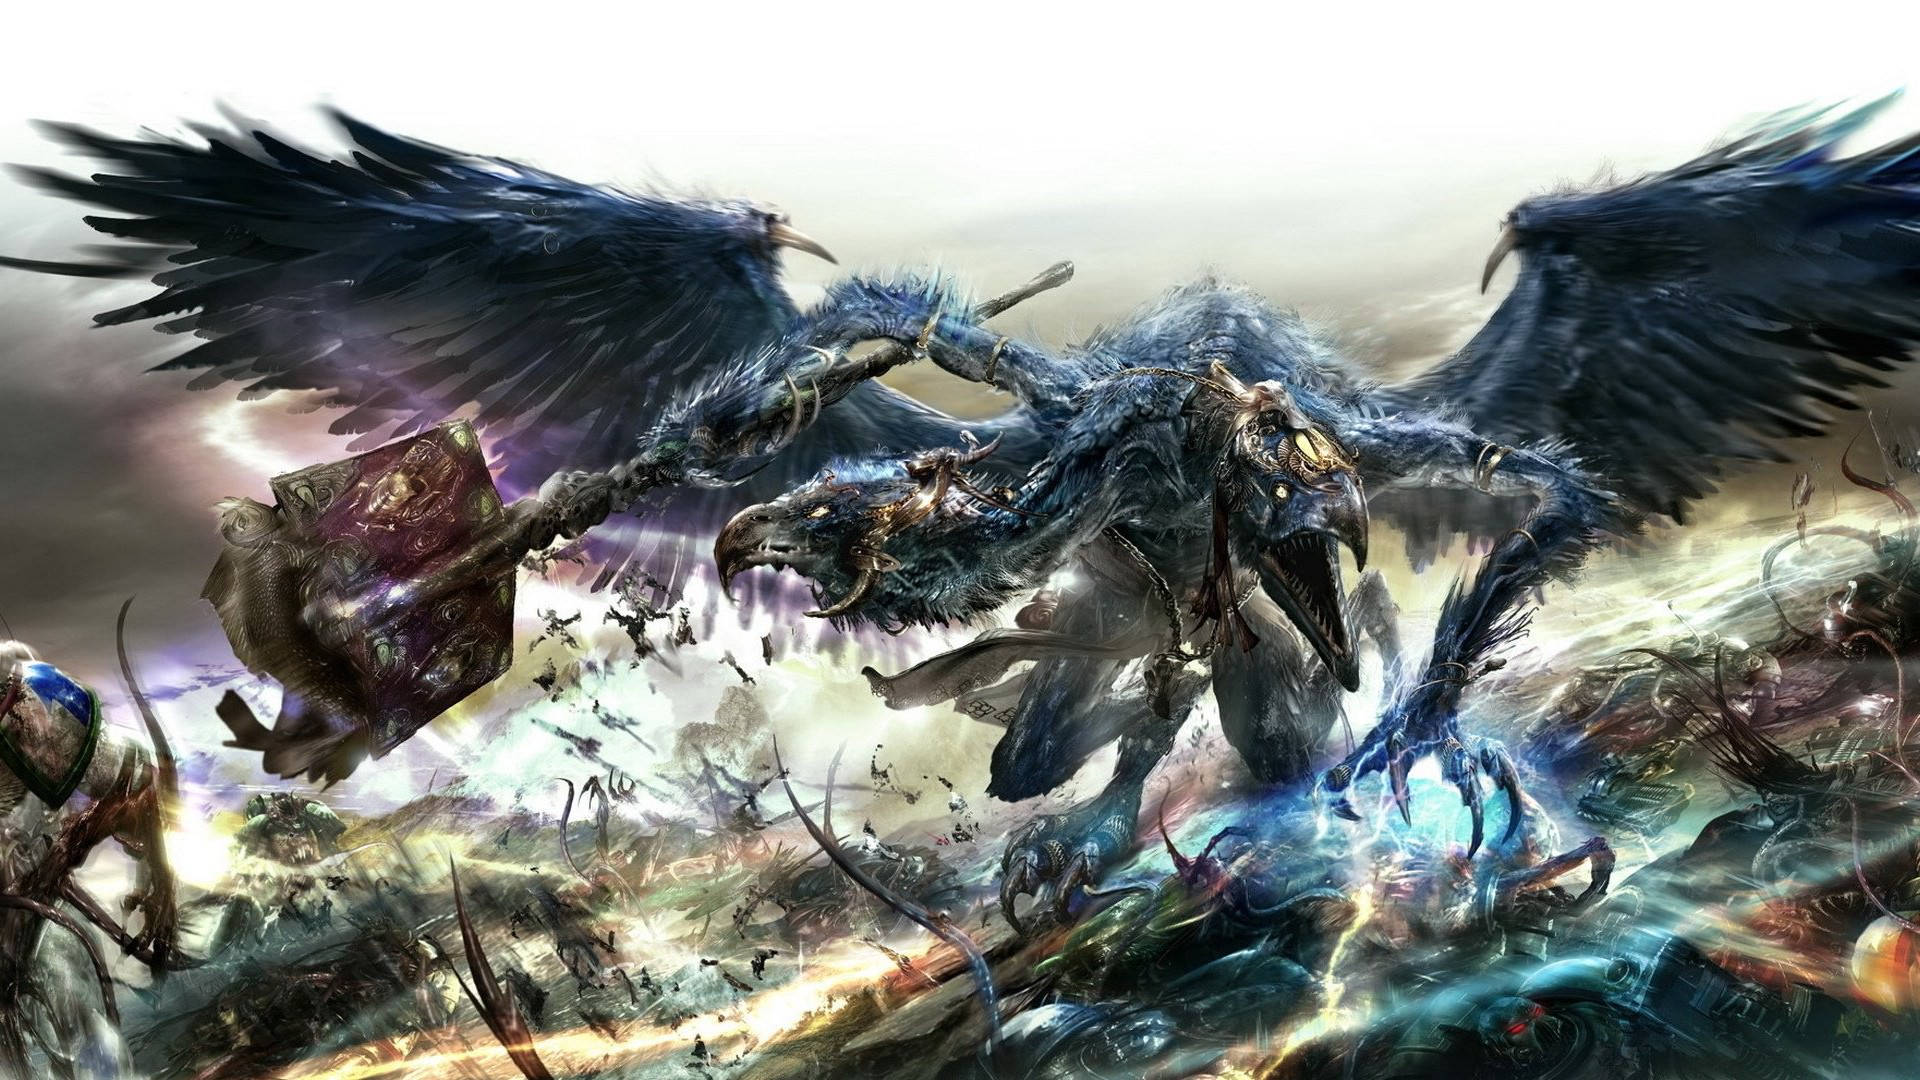 Tzeentch Chaos Daemons Warhammer 40k Background